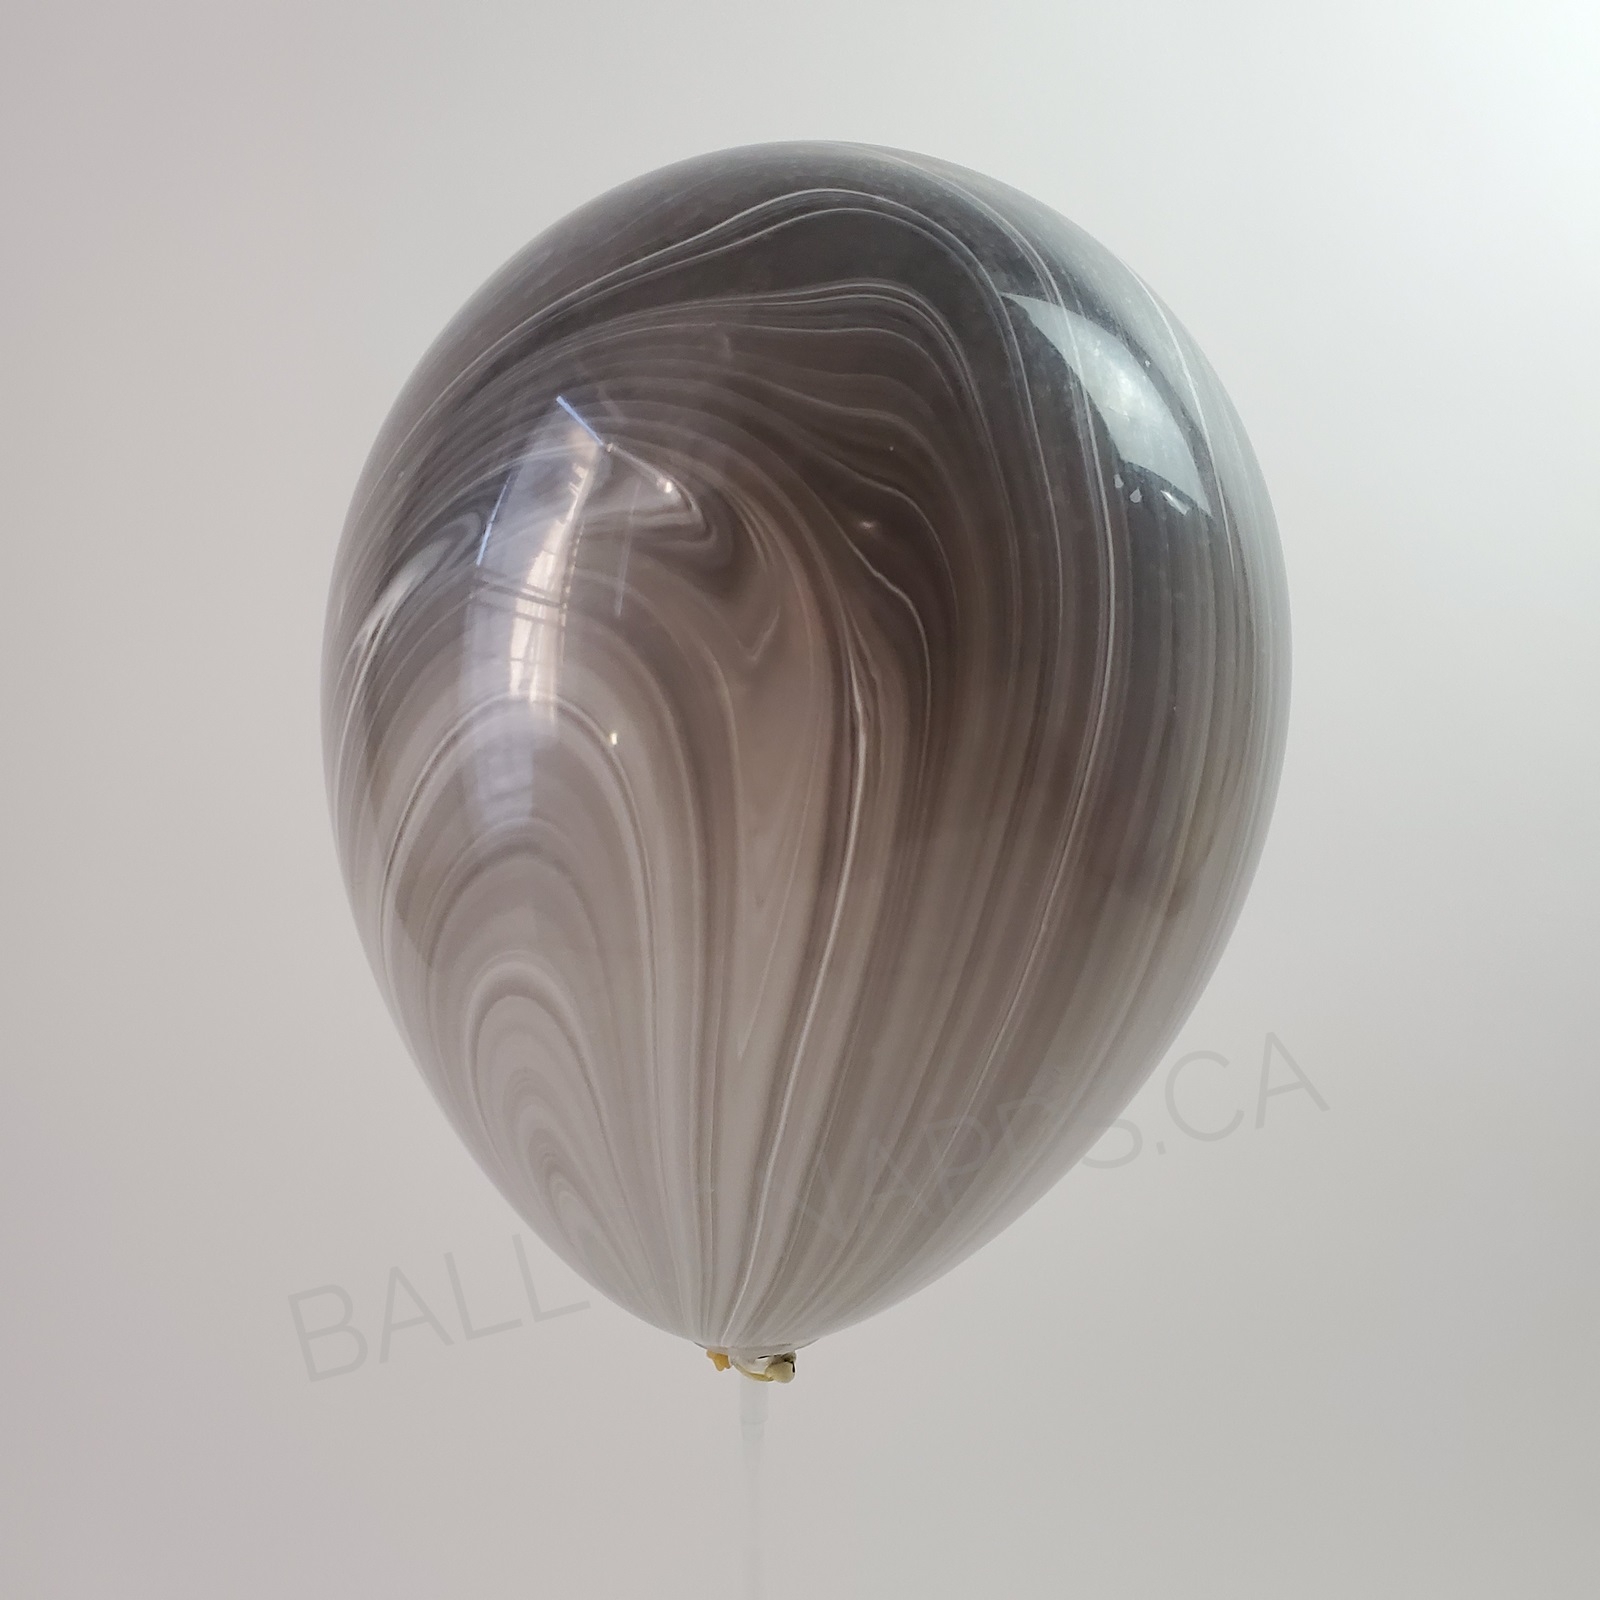 balloon texture (25) 11